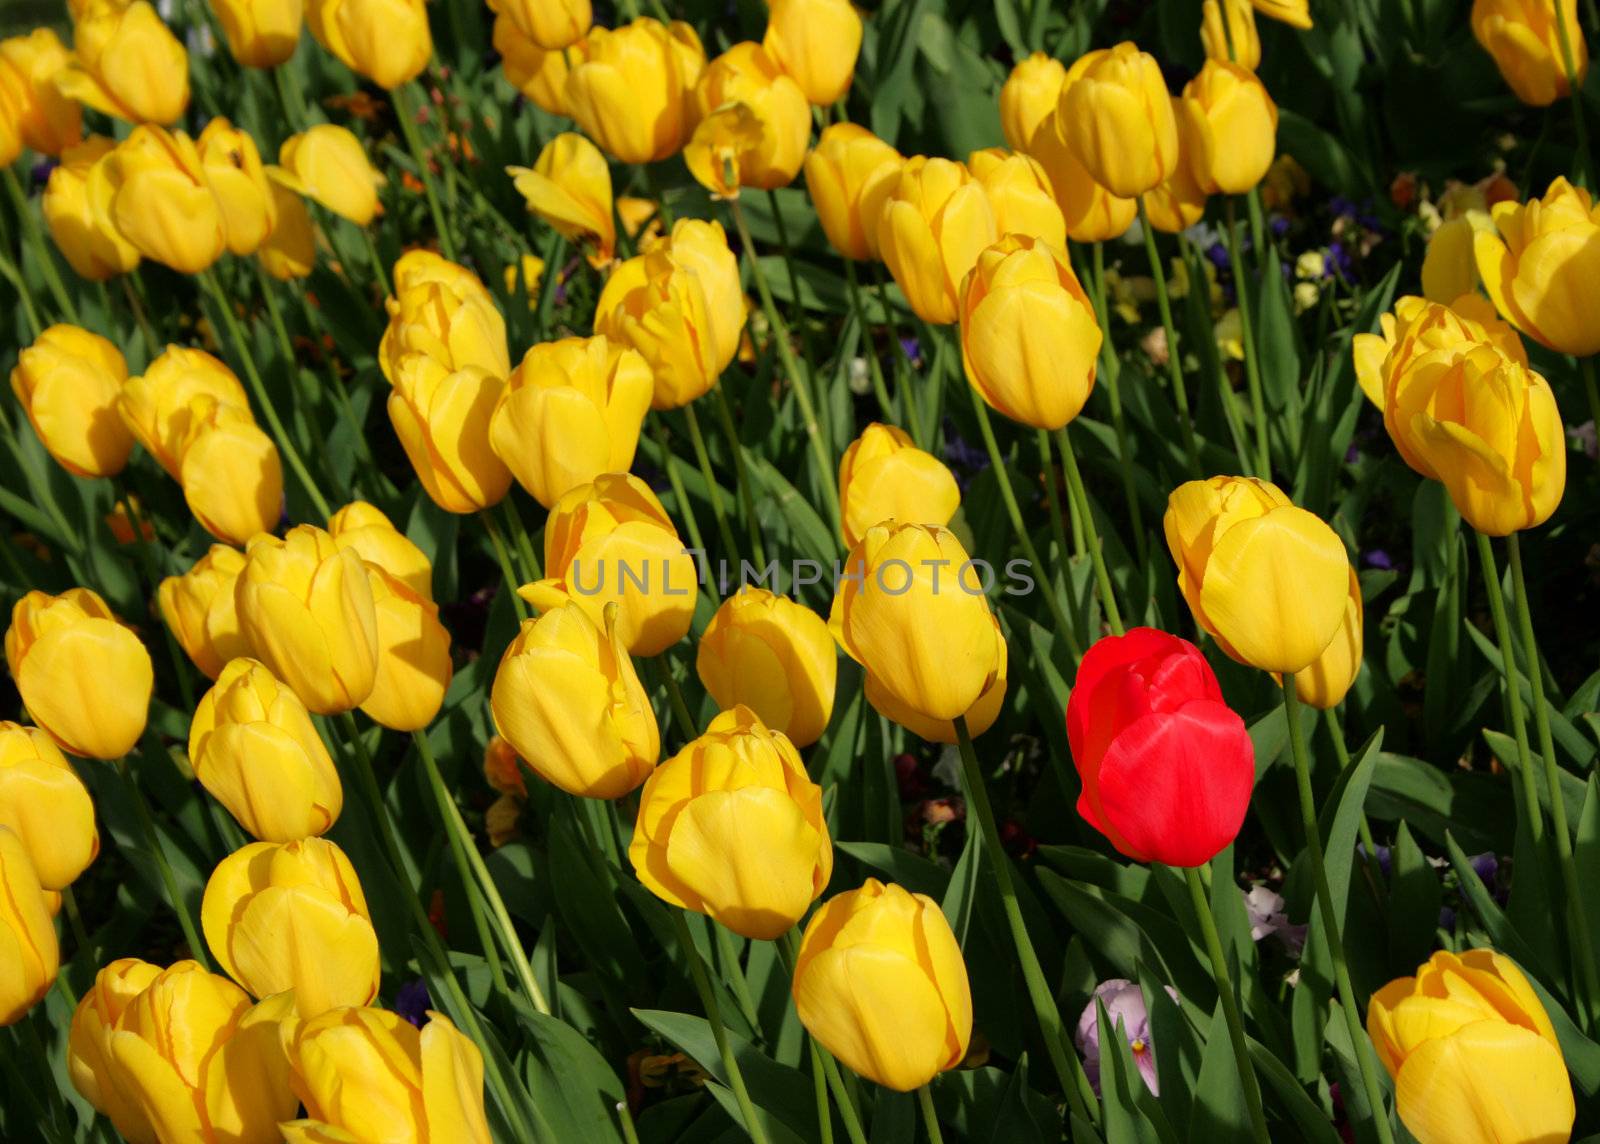 One red tulip among yellow tuplis